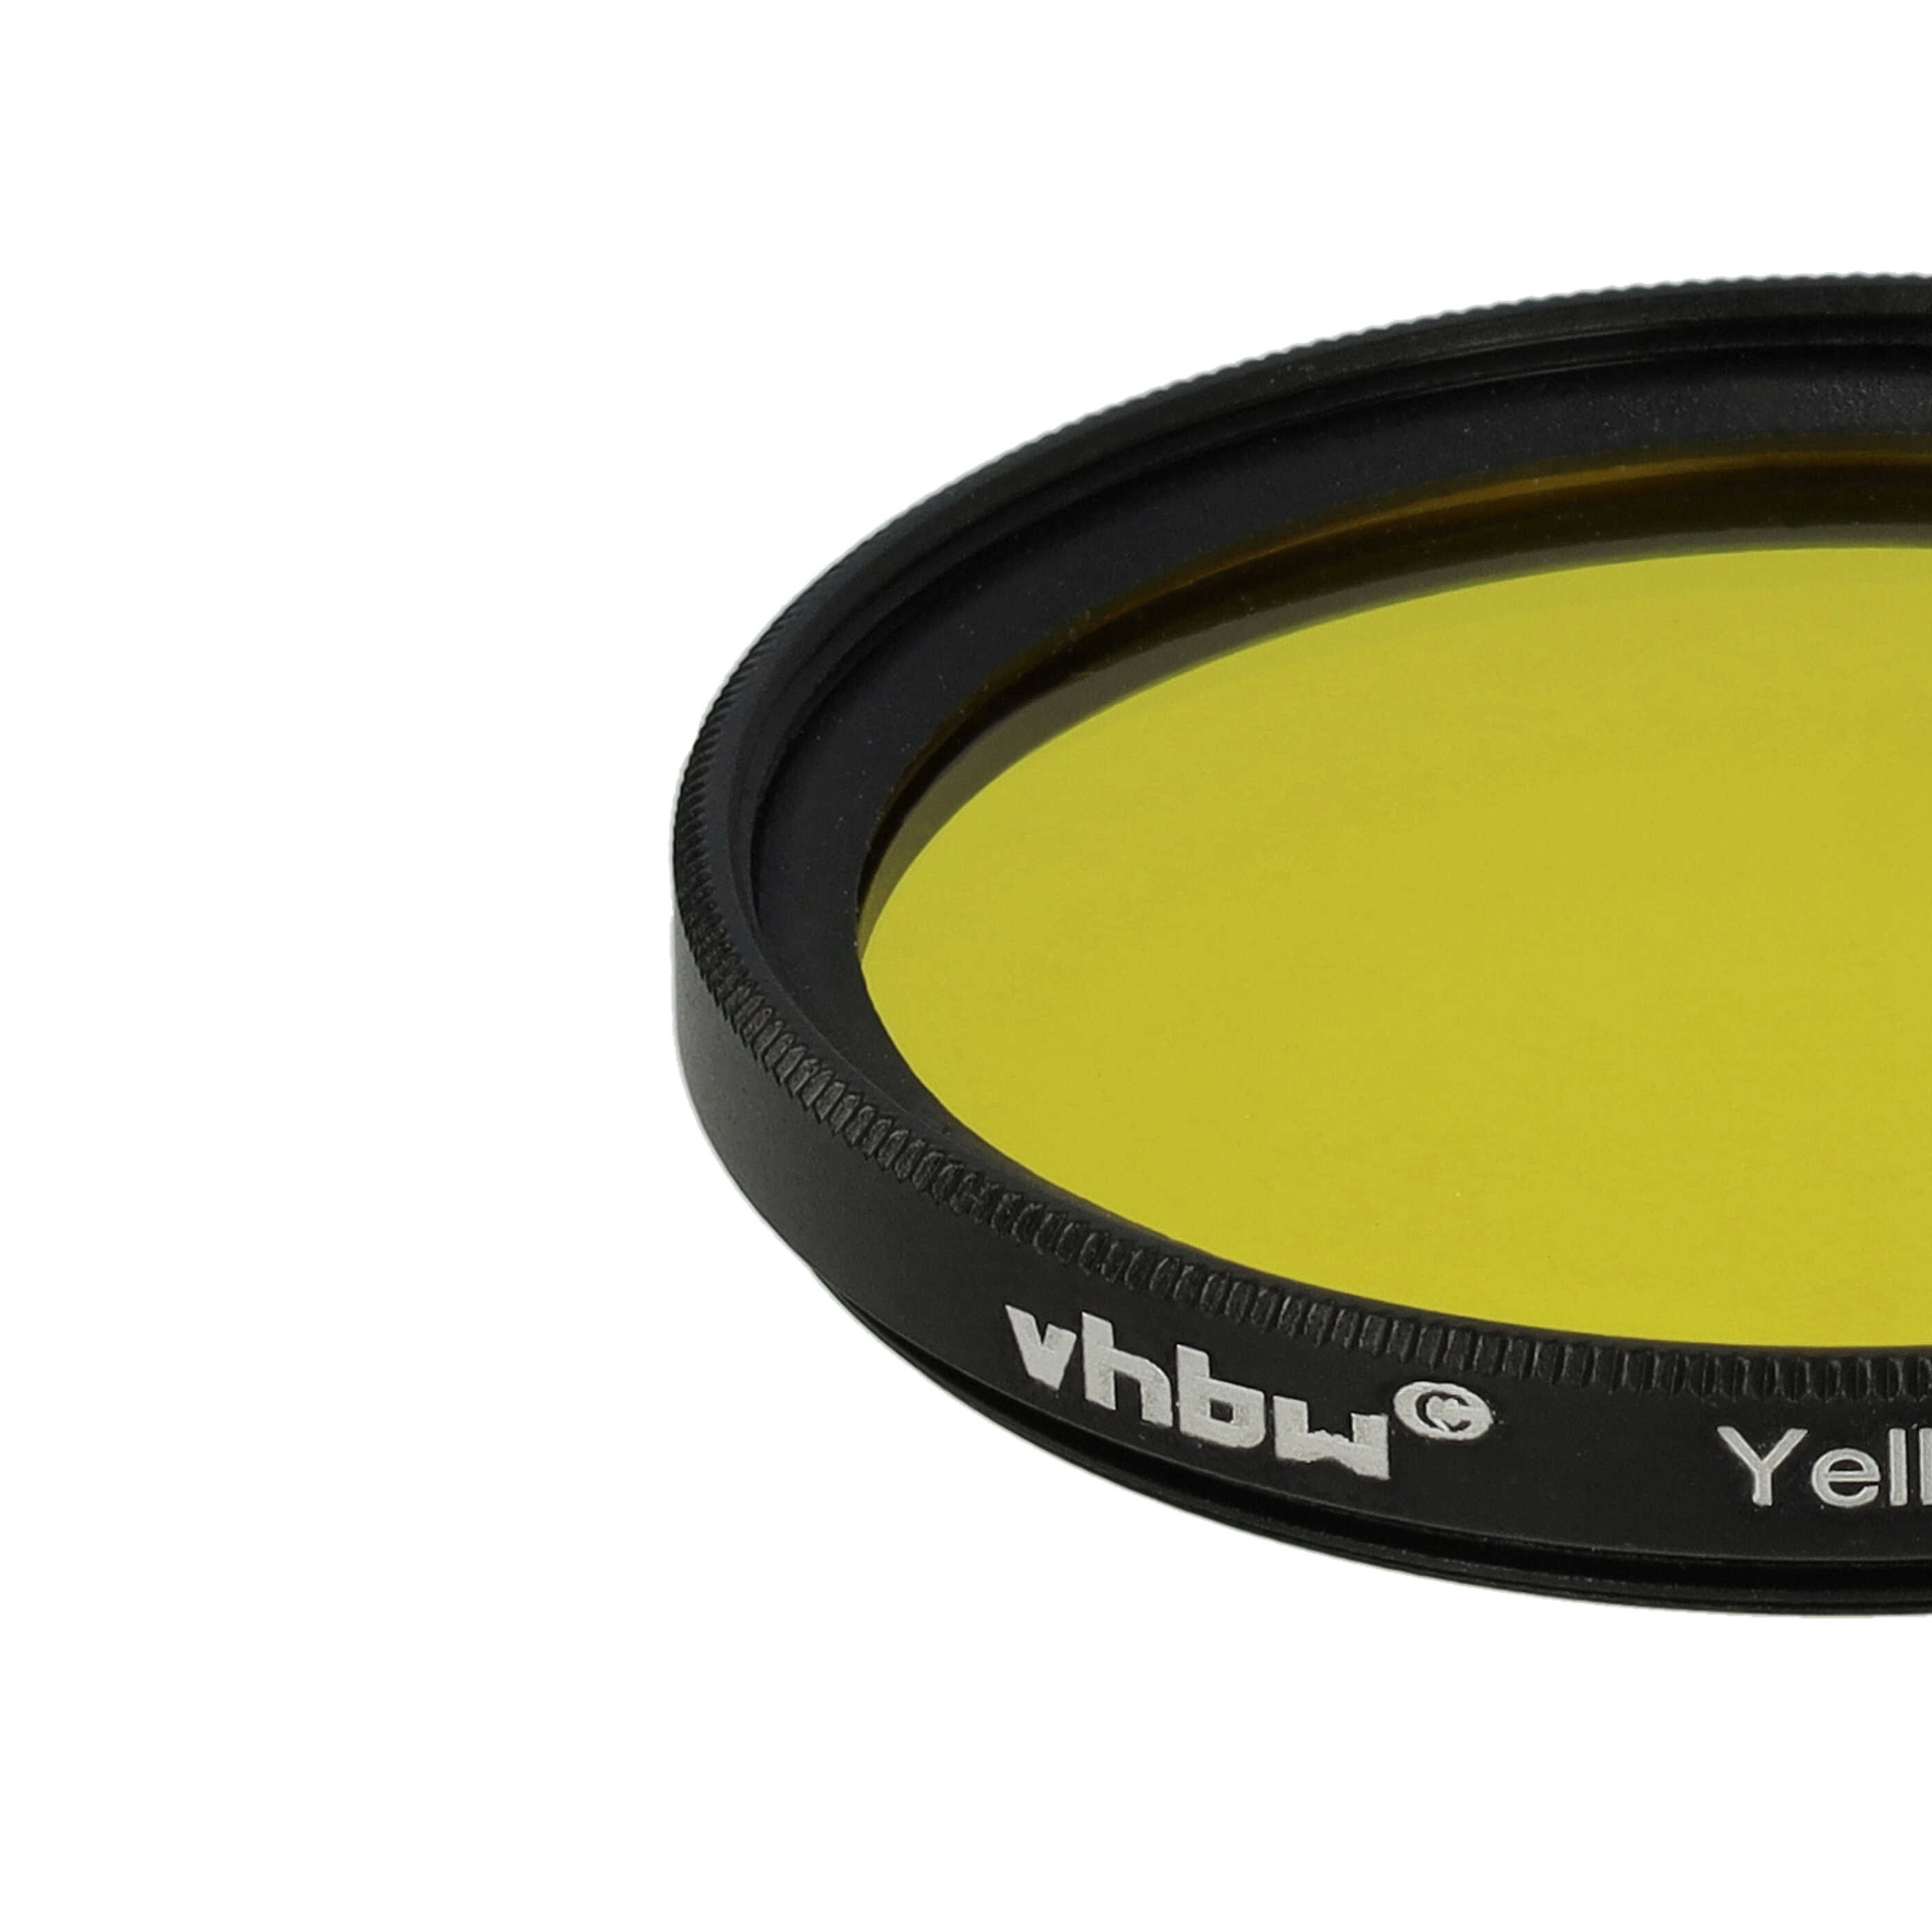 Filtro de color para objetivo de cámara con rosca de filtro de 46 mm - Filtro amarillo